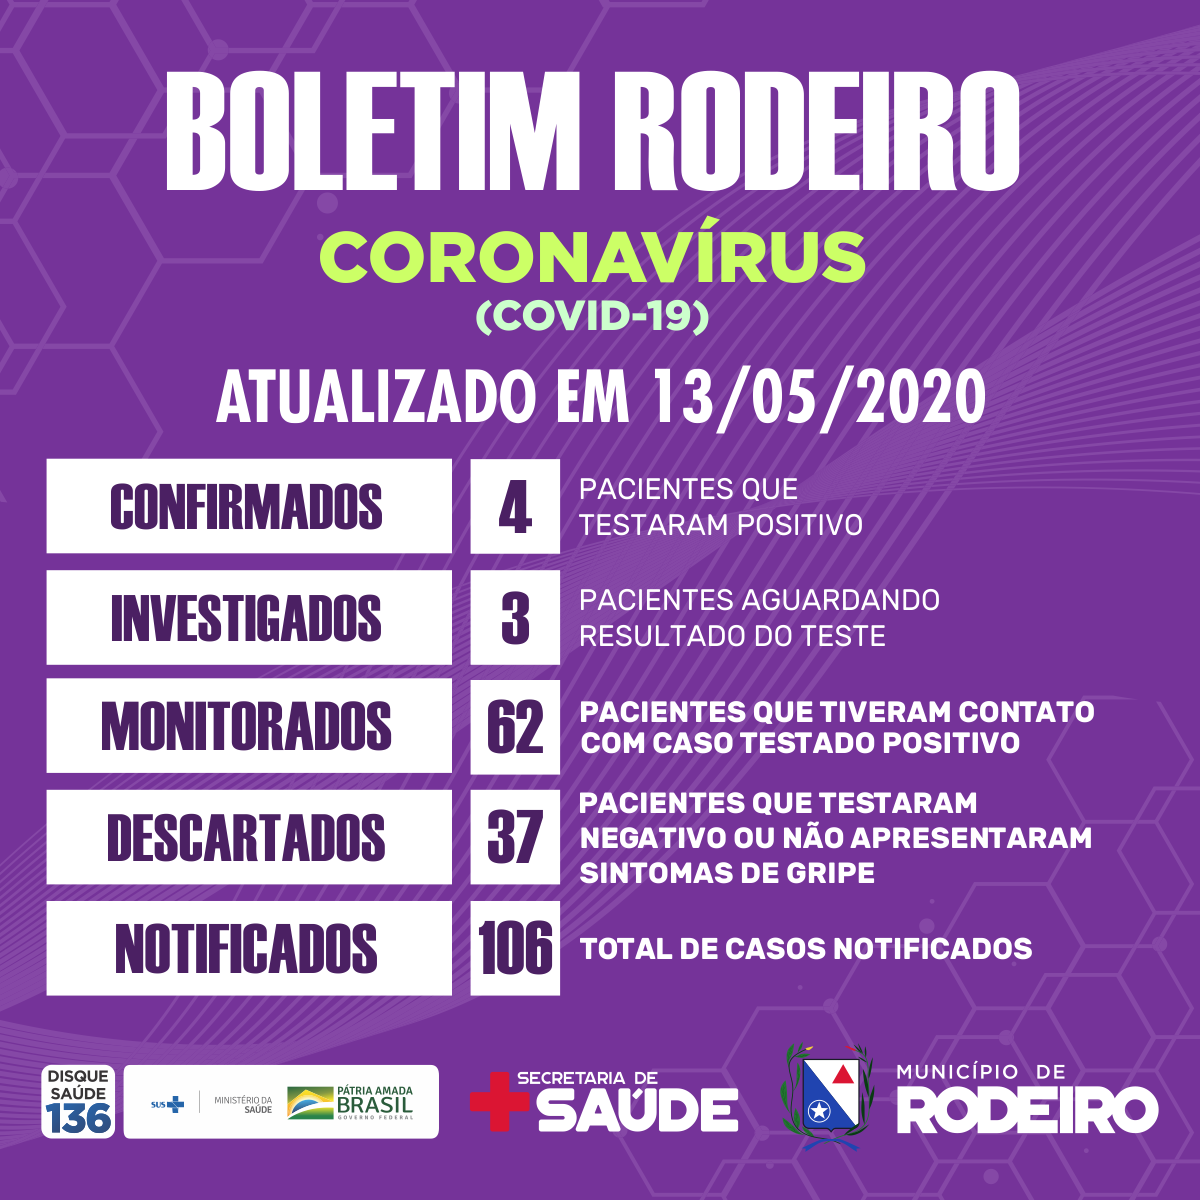 Boletim epidemiológico do Município de Rodeiro, atualização sobre coronavírus em 13/05/2020